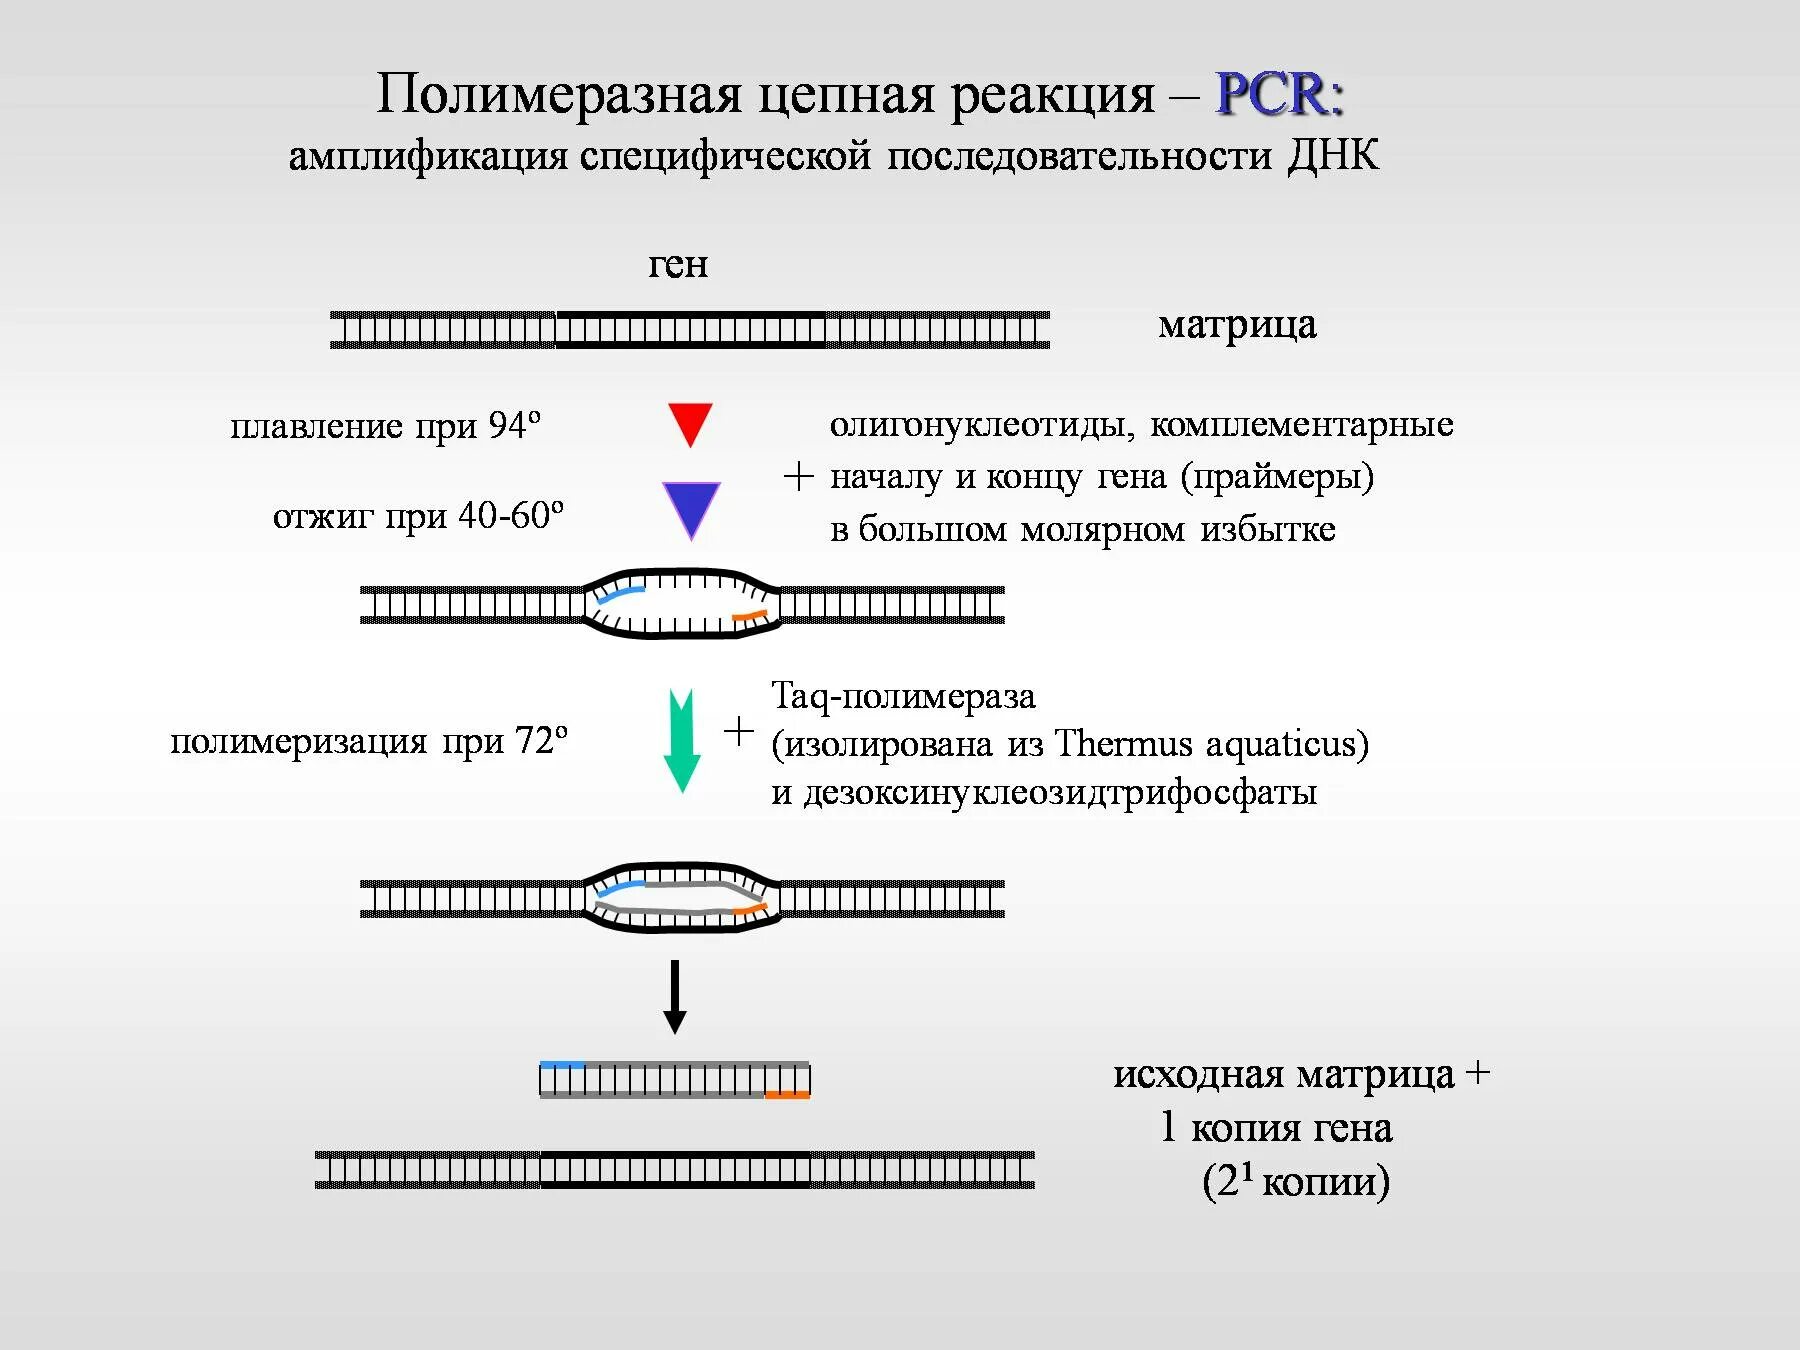 Метод днк идентификации. . Полимеразная цепная реакция (ПЦР). Этапы. Последовательность амплификации ДНК. Общая схема амплификации ДНК при ПЦР. Метод постановки полимеразной цепной реакции схема.